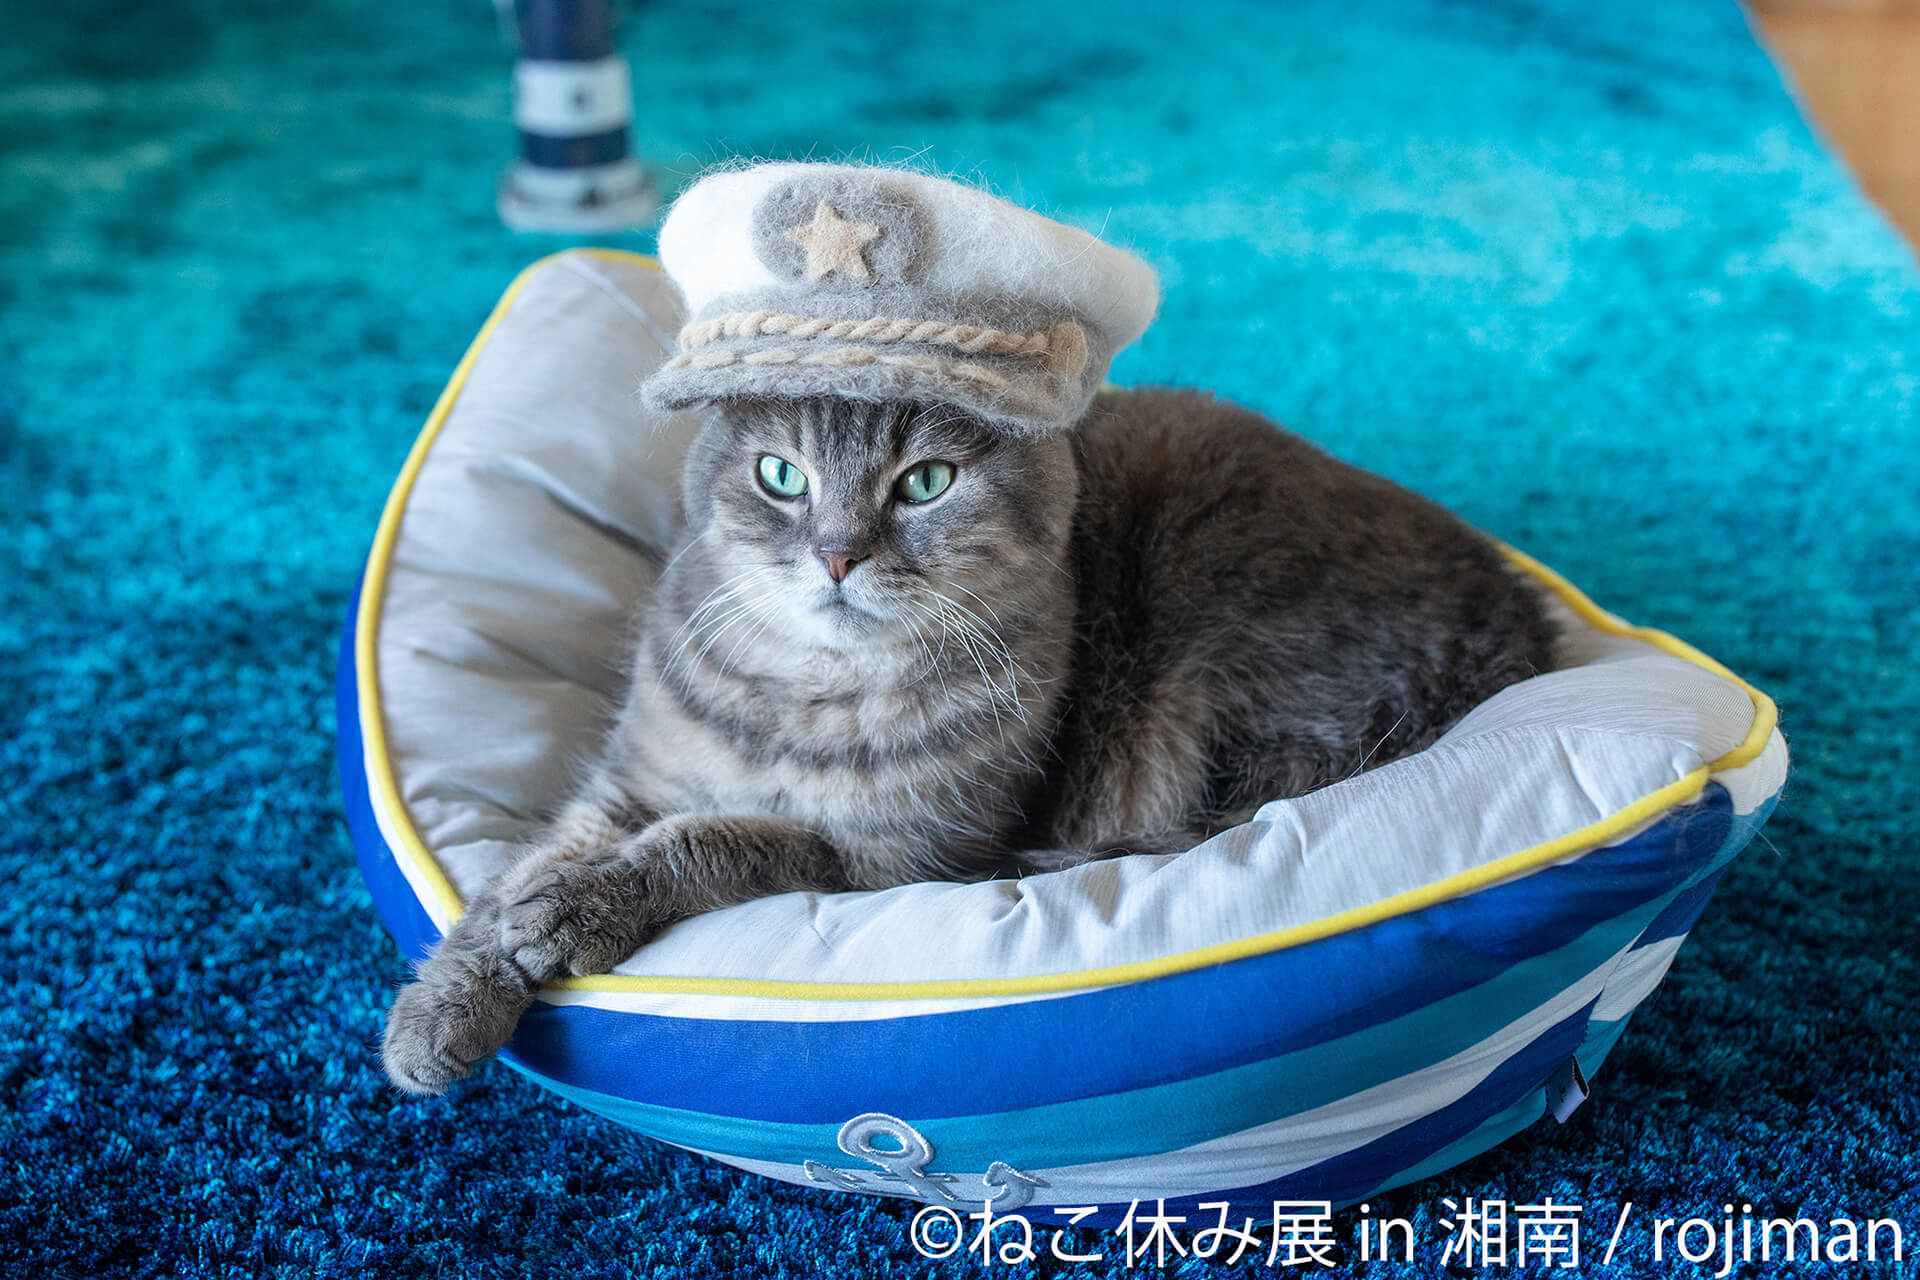 この写真はねこ休み展 in 湘南の展示作品で、セーラー風の格好をした猫です